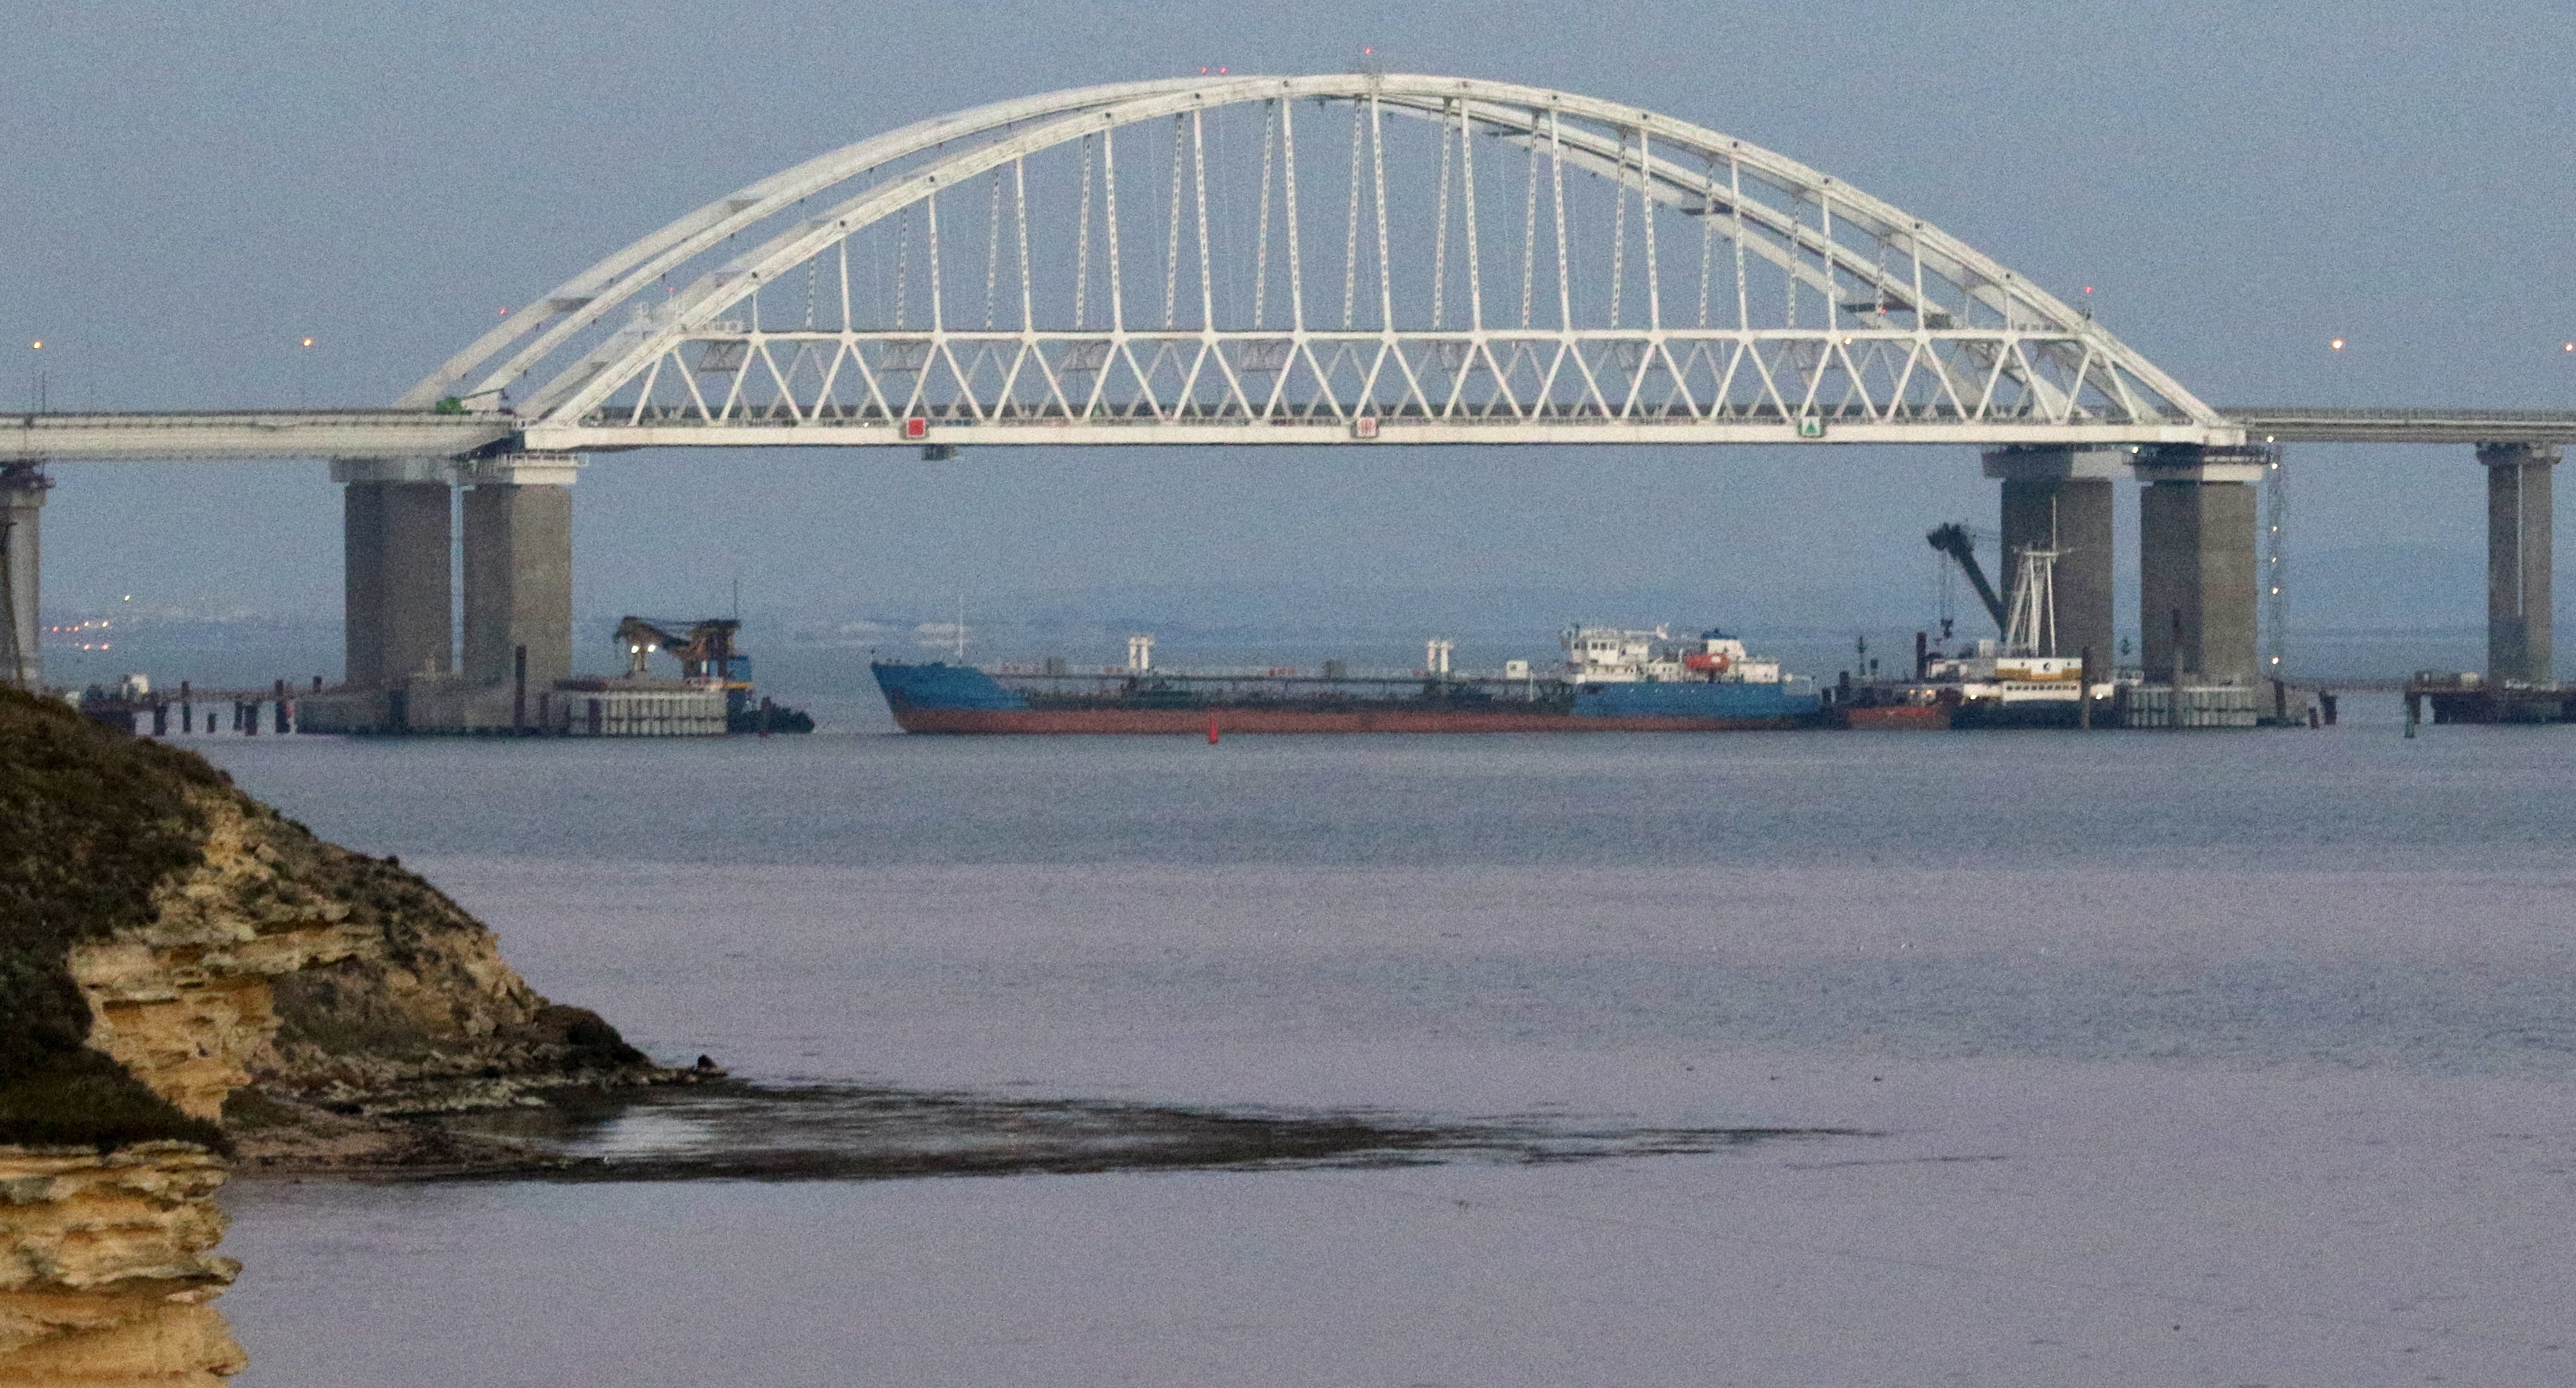 Elengedték az ukrán hatóságok által feltartóztatott orosz hajó 10 fős legénységét